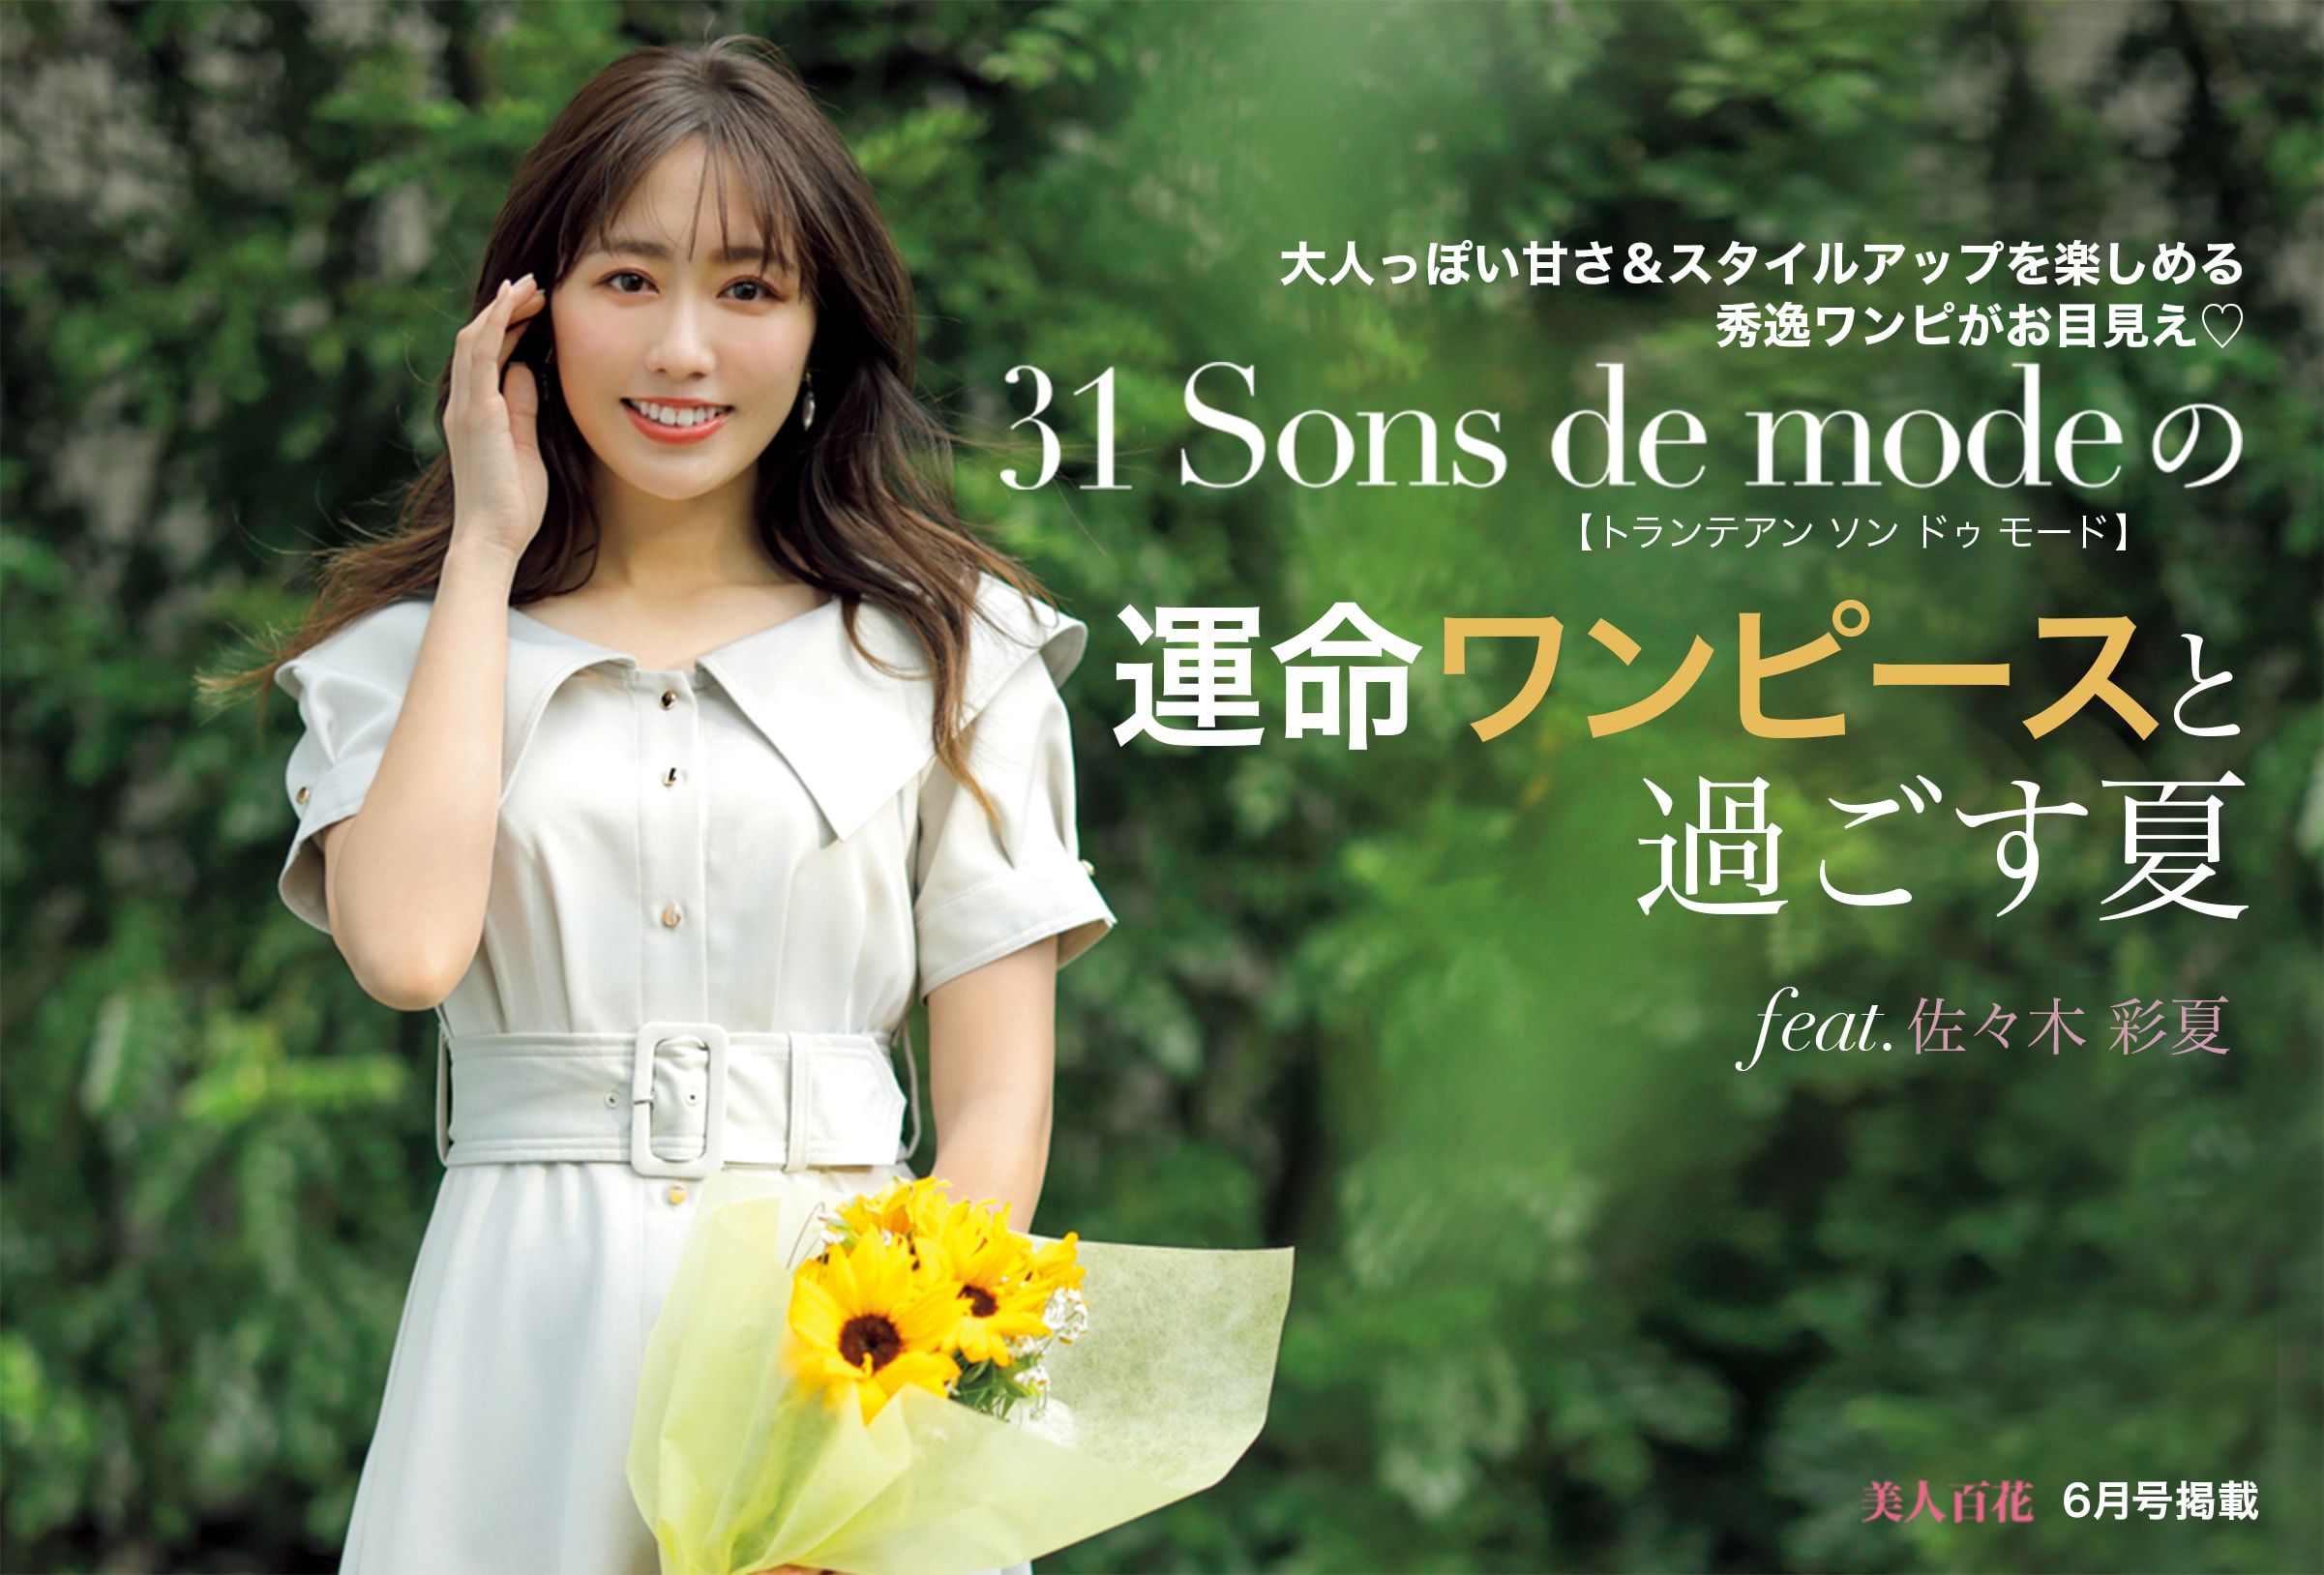 美人百花6月号掲載 31 Sons de modeの運命ワンピースと過ごす夏 feat.佐々木彩夏